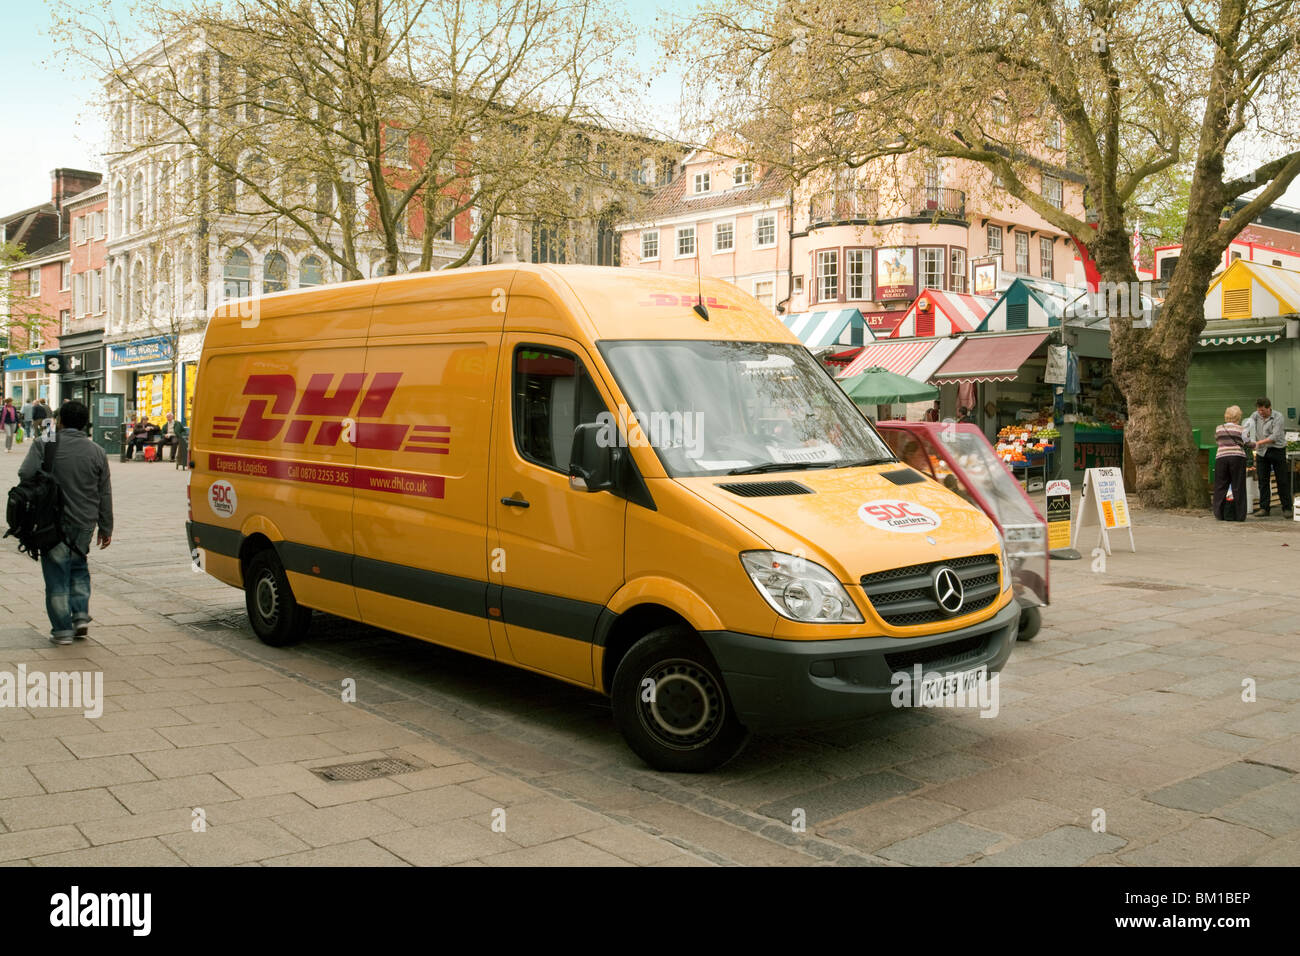 DHL delivery van nella piazza del mercato, Norwich, Norfolk, Regno Unito Foto Stock